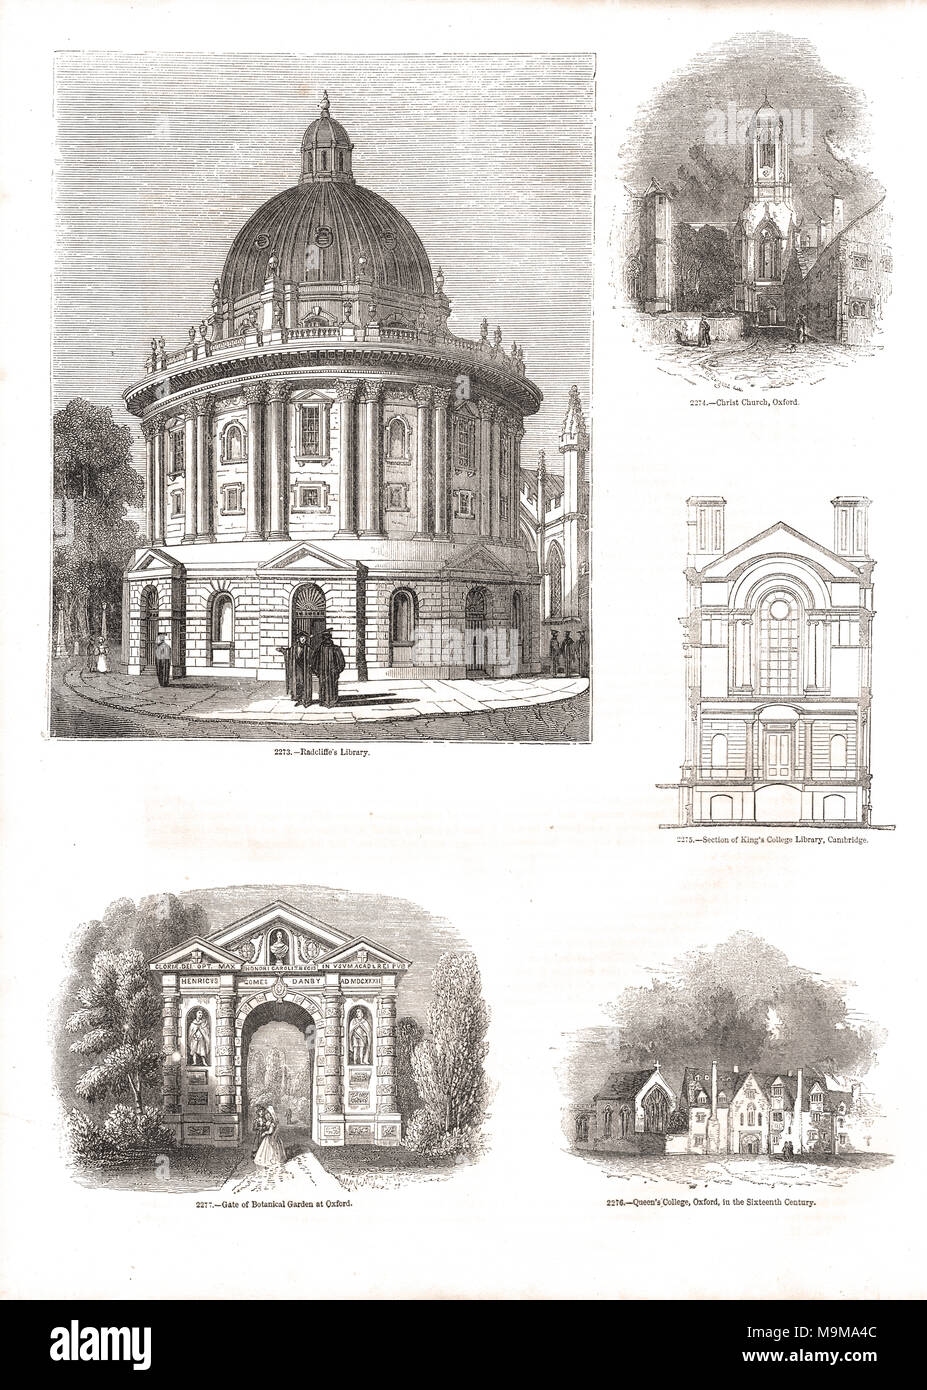 Gravé des scènes de la ville universitaire de Oxford, Angleterre vers 1845 Banque D'Images